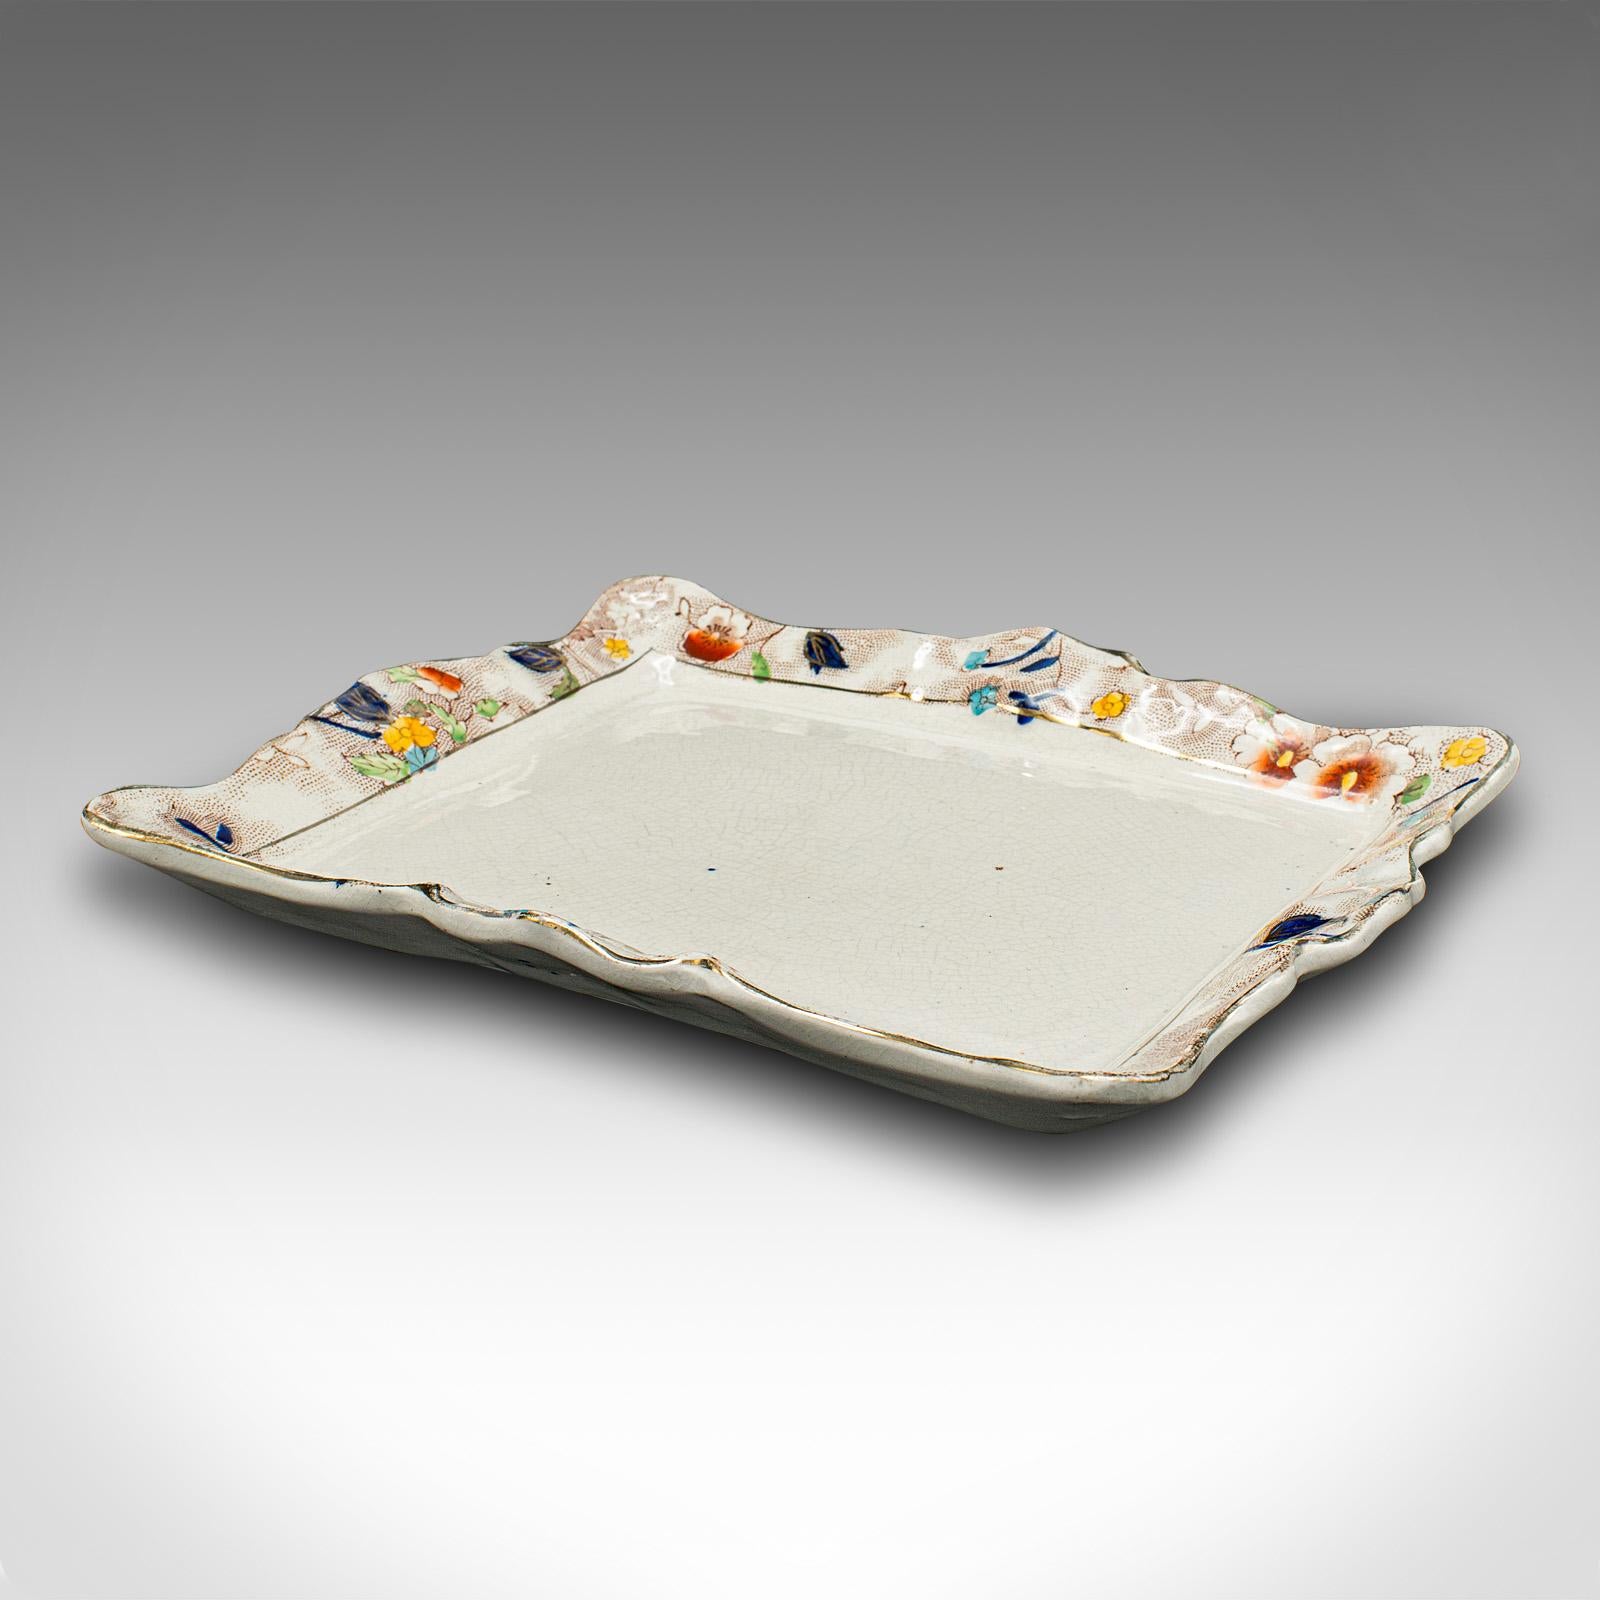 Dies ist ein antiker Käsewächter. Eine englische, dekorative Butterdose aus Keramik aus der spätviktorianischen Zeit, um 1900.

Ansprechend dekorative Schale - breiter Deckel für Käse oder Butter geeignet
Mit wünschenswerter Alterspatina und in